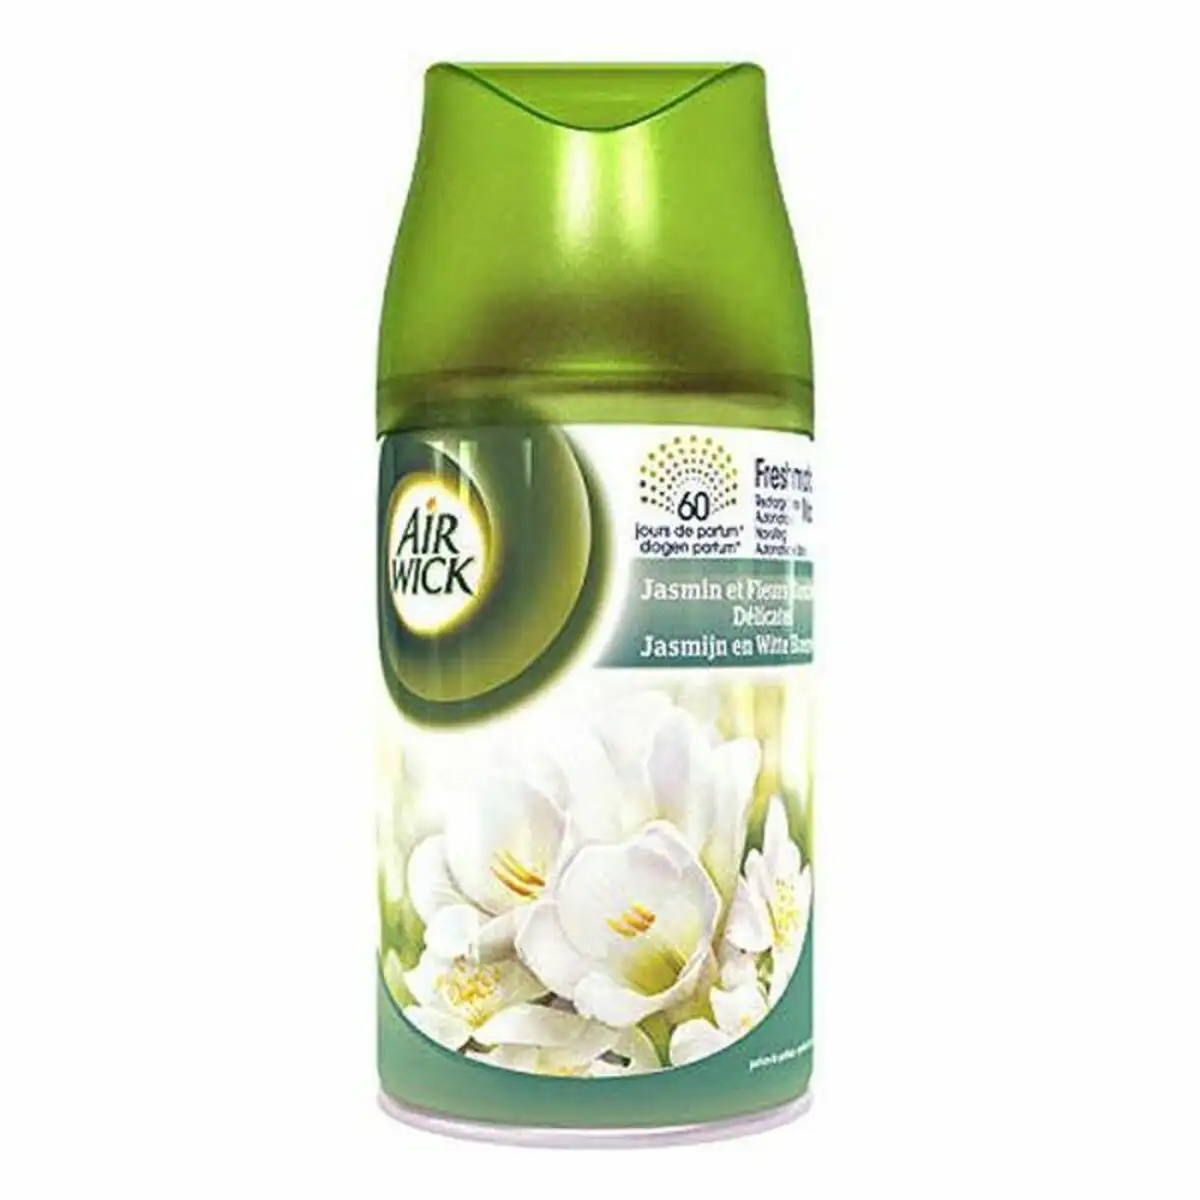 Desodorisant jasmine air wick 250 ml _4557. DIAYTAR SENEGAL - Où Chaque Produit est une Promesse de Qualité. Explorez notre boutique en ligne et choisissez des produits qui répondent à vos exigences élevées.